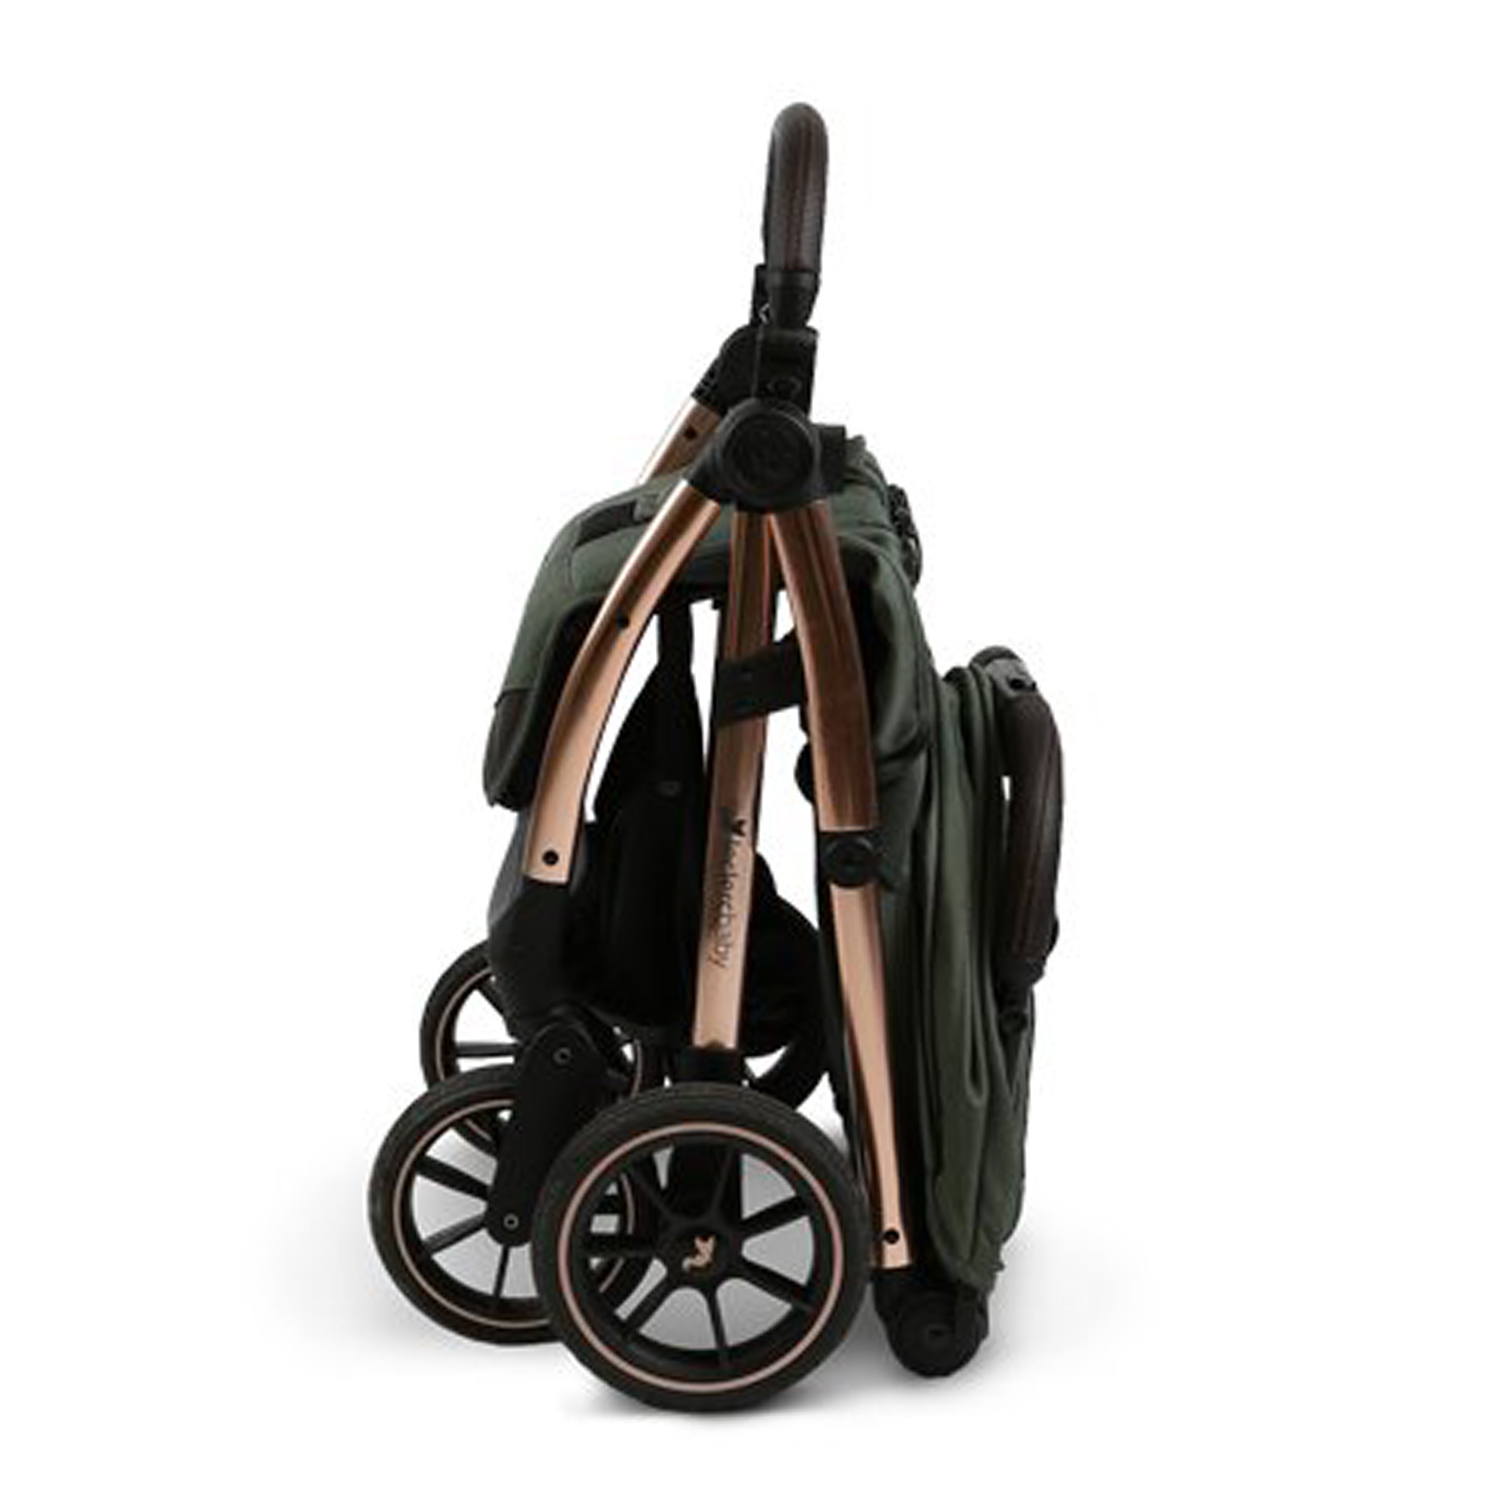 Прогулочная коляска Leclerc Influencer XL, Army Green, цвет нет цвета - фото 6